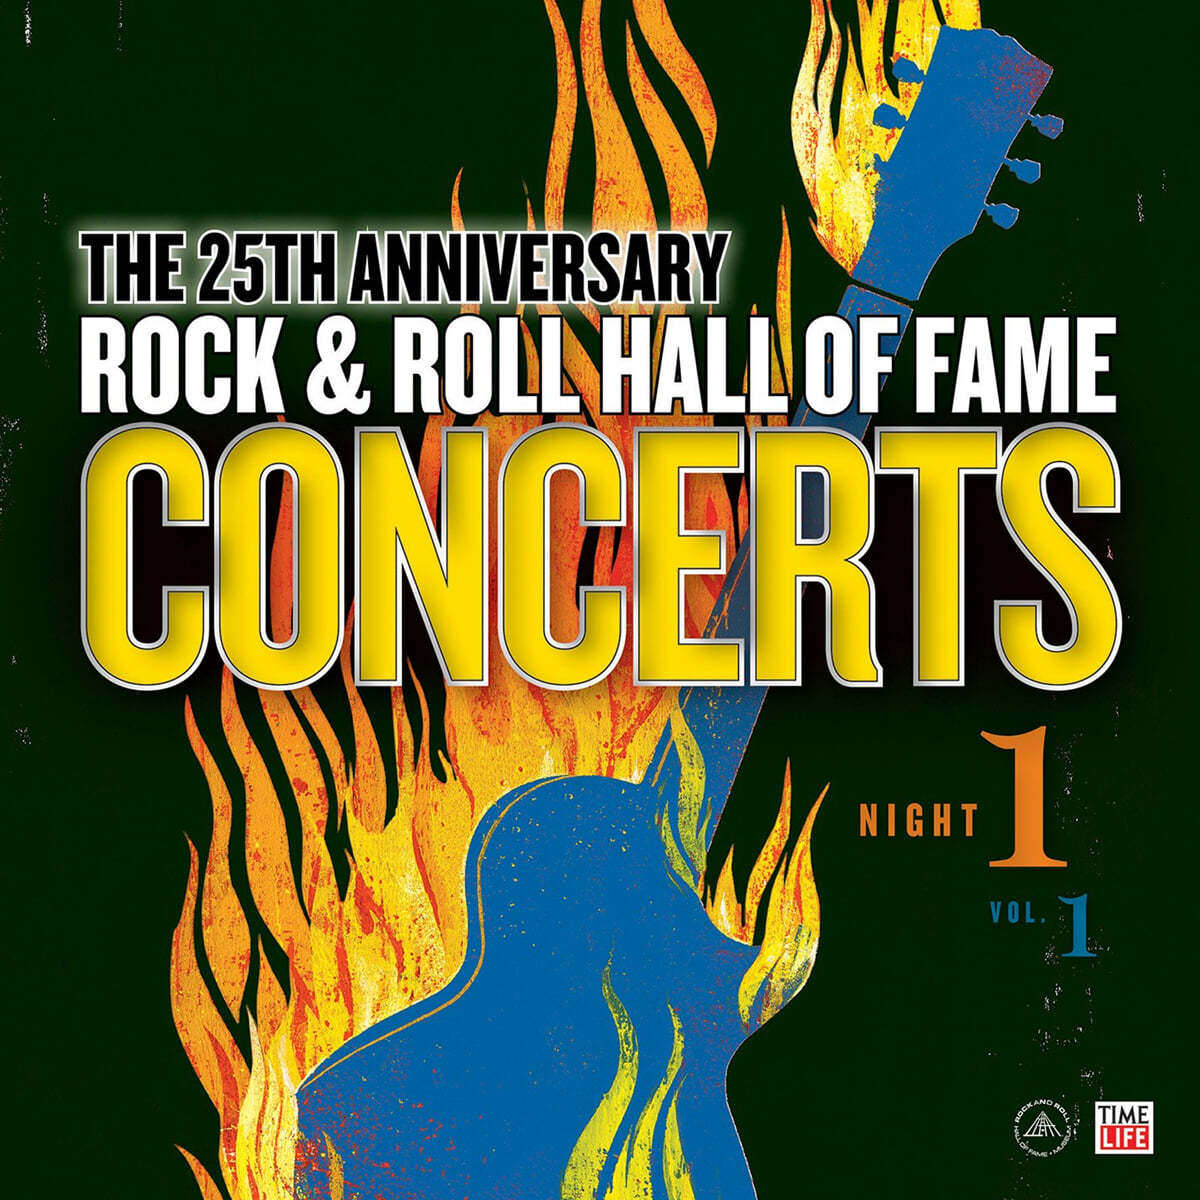 로큰롤 명예의 전당 - 콘서트 모음집 (Rock & Roll Hall of Fame: Concerts Night 1 - Vol. 1) [LP]